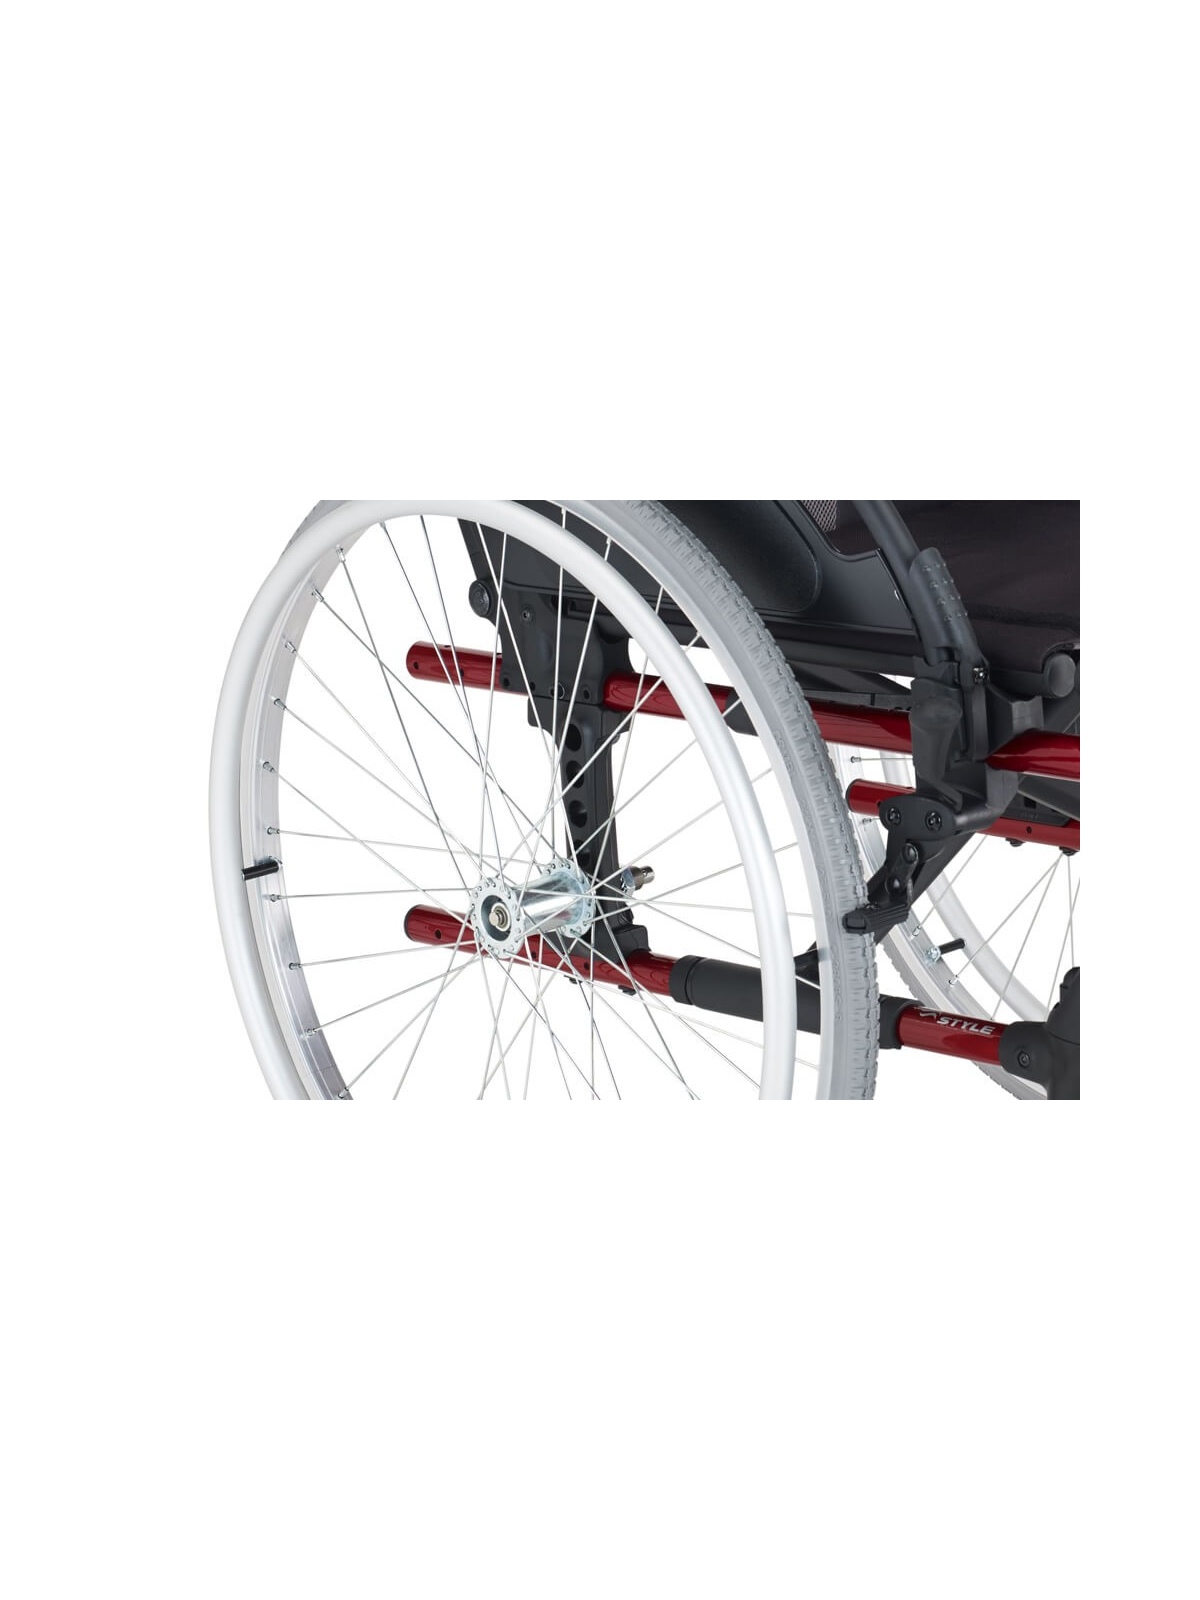 Silla de ruedas de aluminio autopropulsable